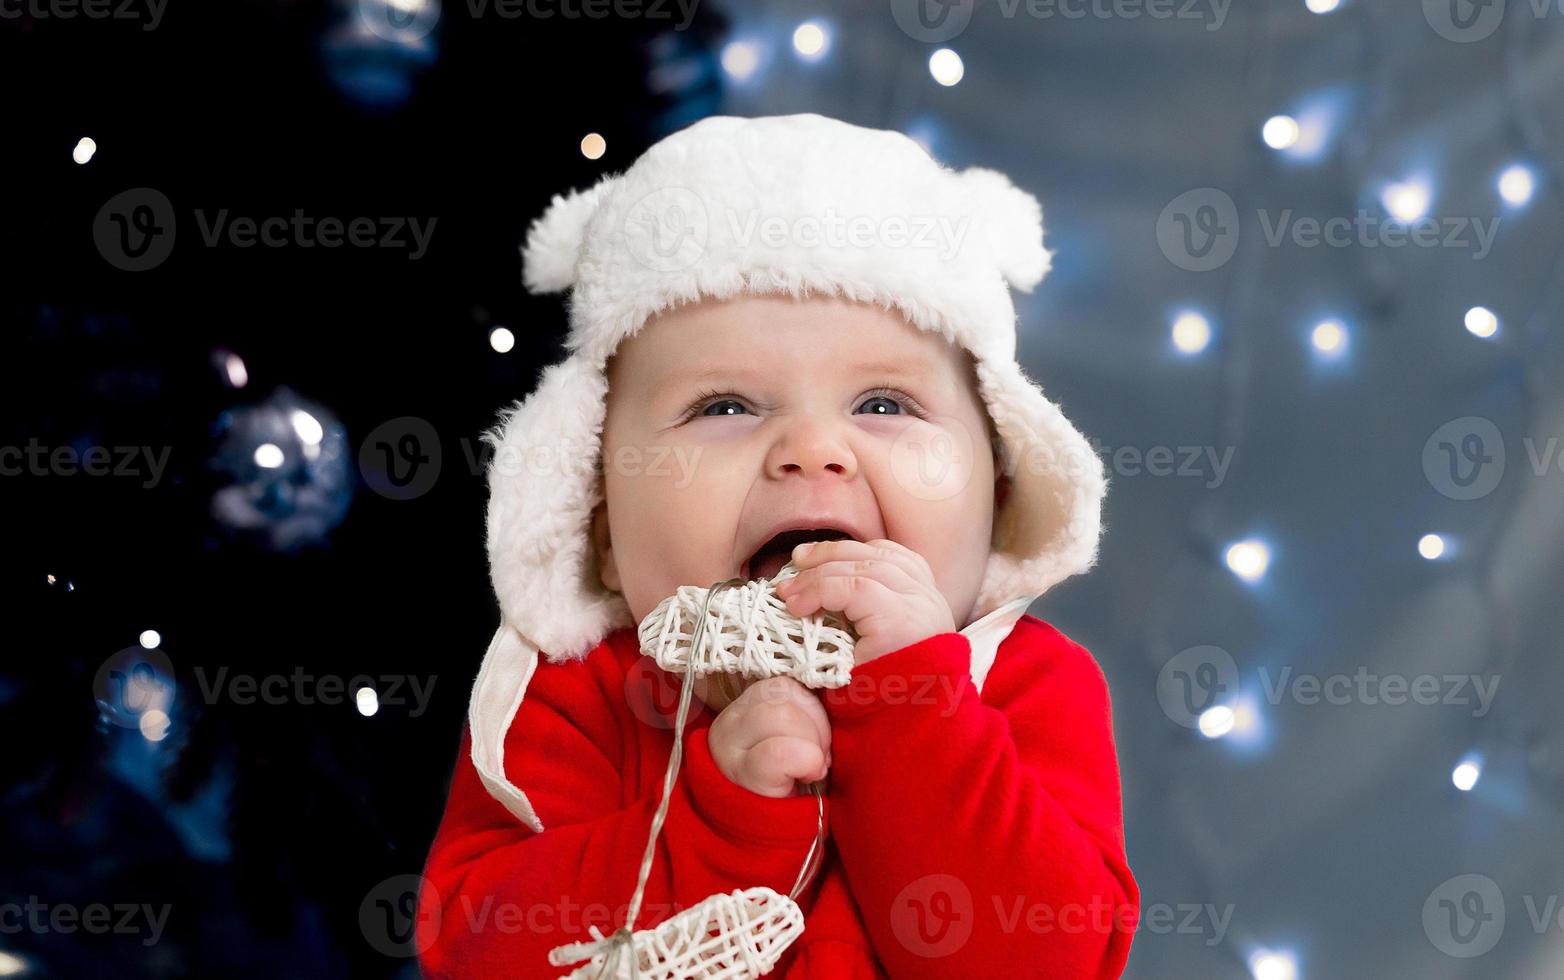 kerstkind lacht en houdt een krans met hartjes vast foto